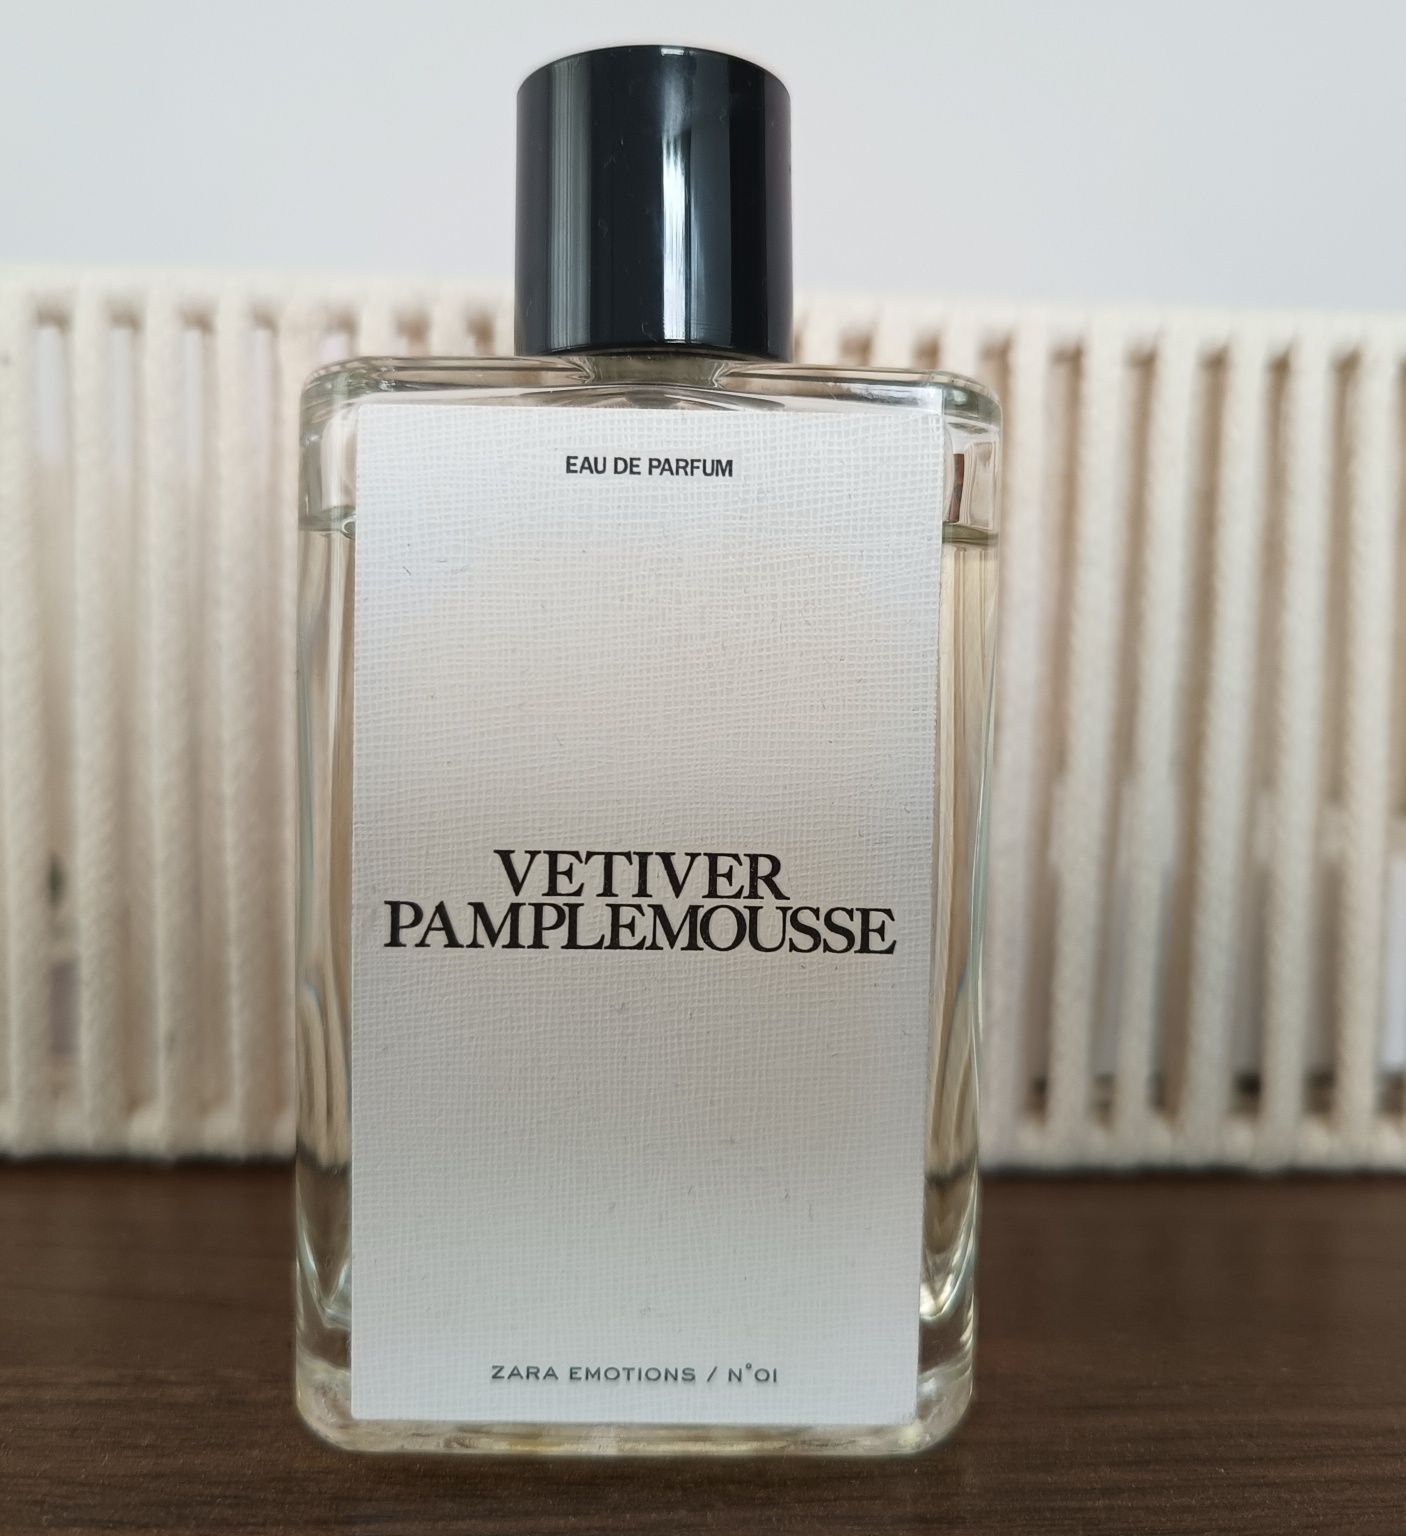 Vetiver Pamplemousse Zara, wersja z 2019 r. , 90 ml, Jo Malone